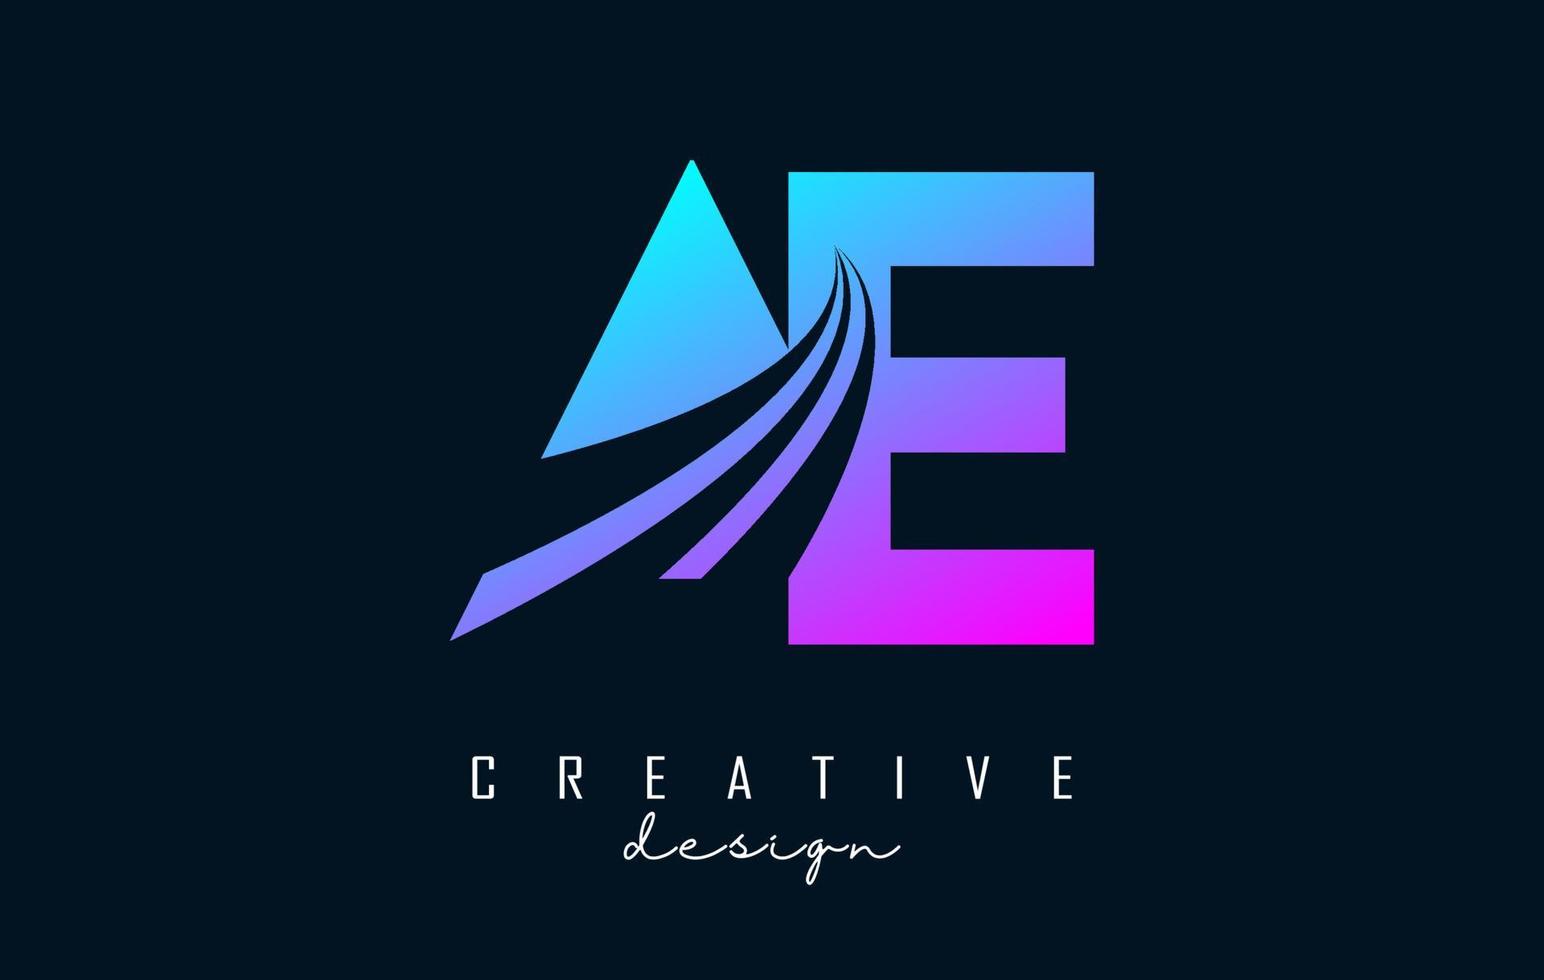 letras coloridas criativas ae ae logotipo com linhas principais e design de conceito de estrada. letras com desenho geométrico. vetor